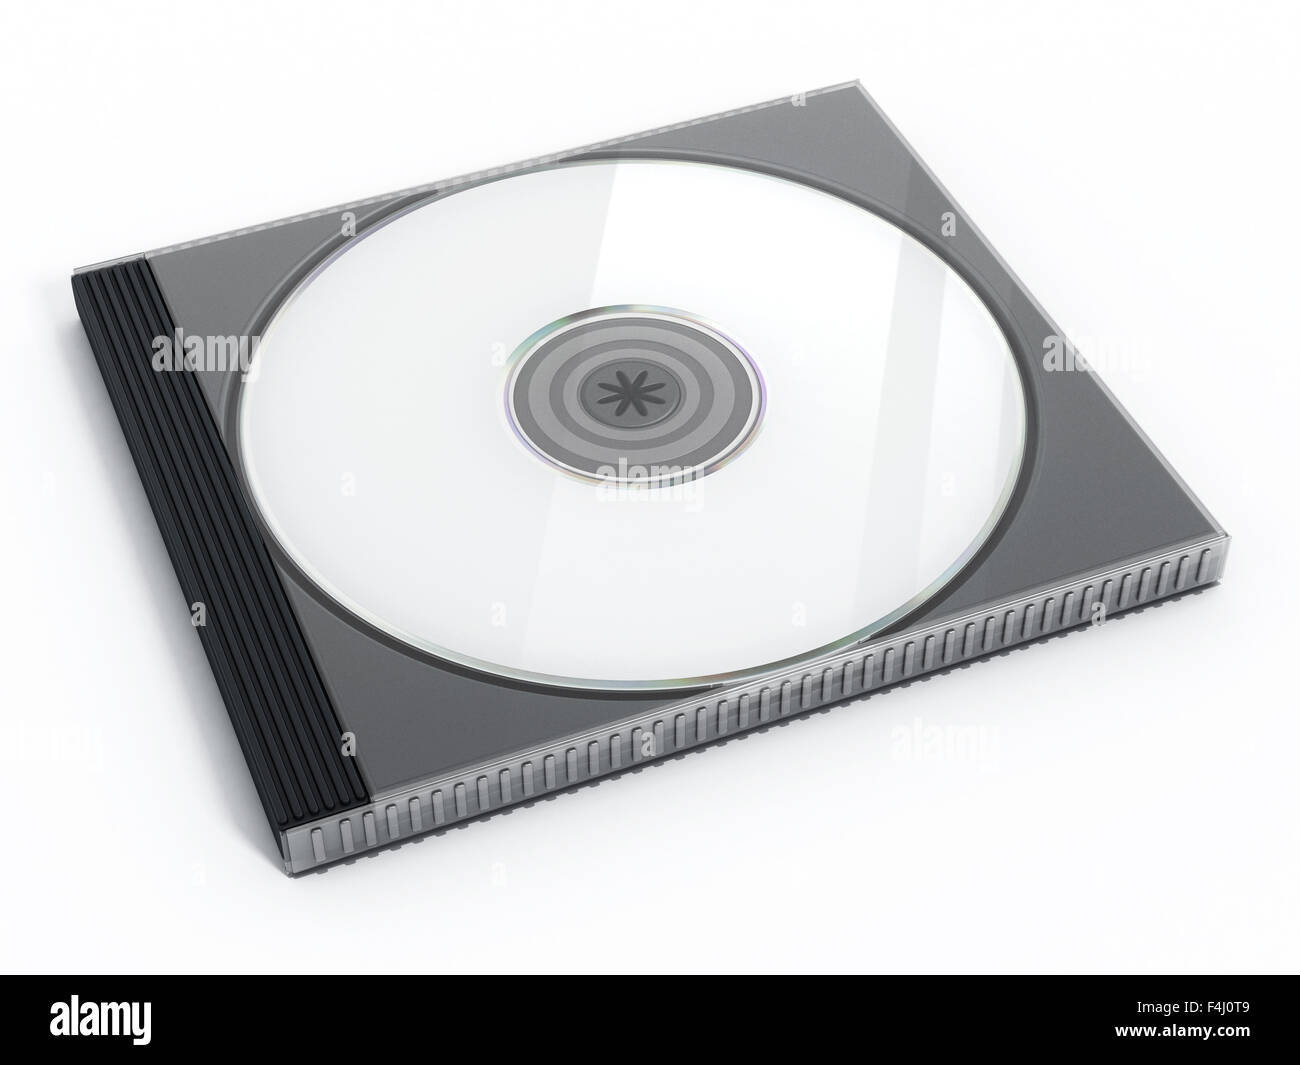 Dvd vuoti dvd cd dvd immagini e fotografie stock ad alta risoluzione - Alamy